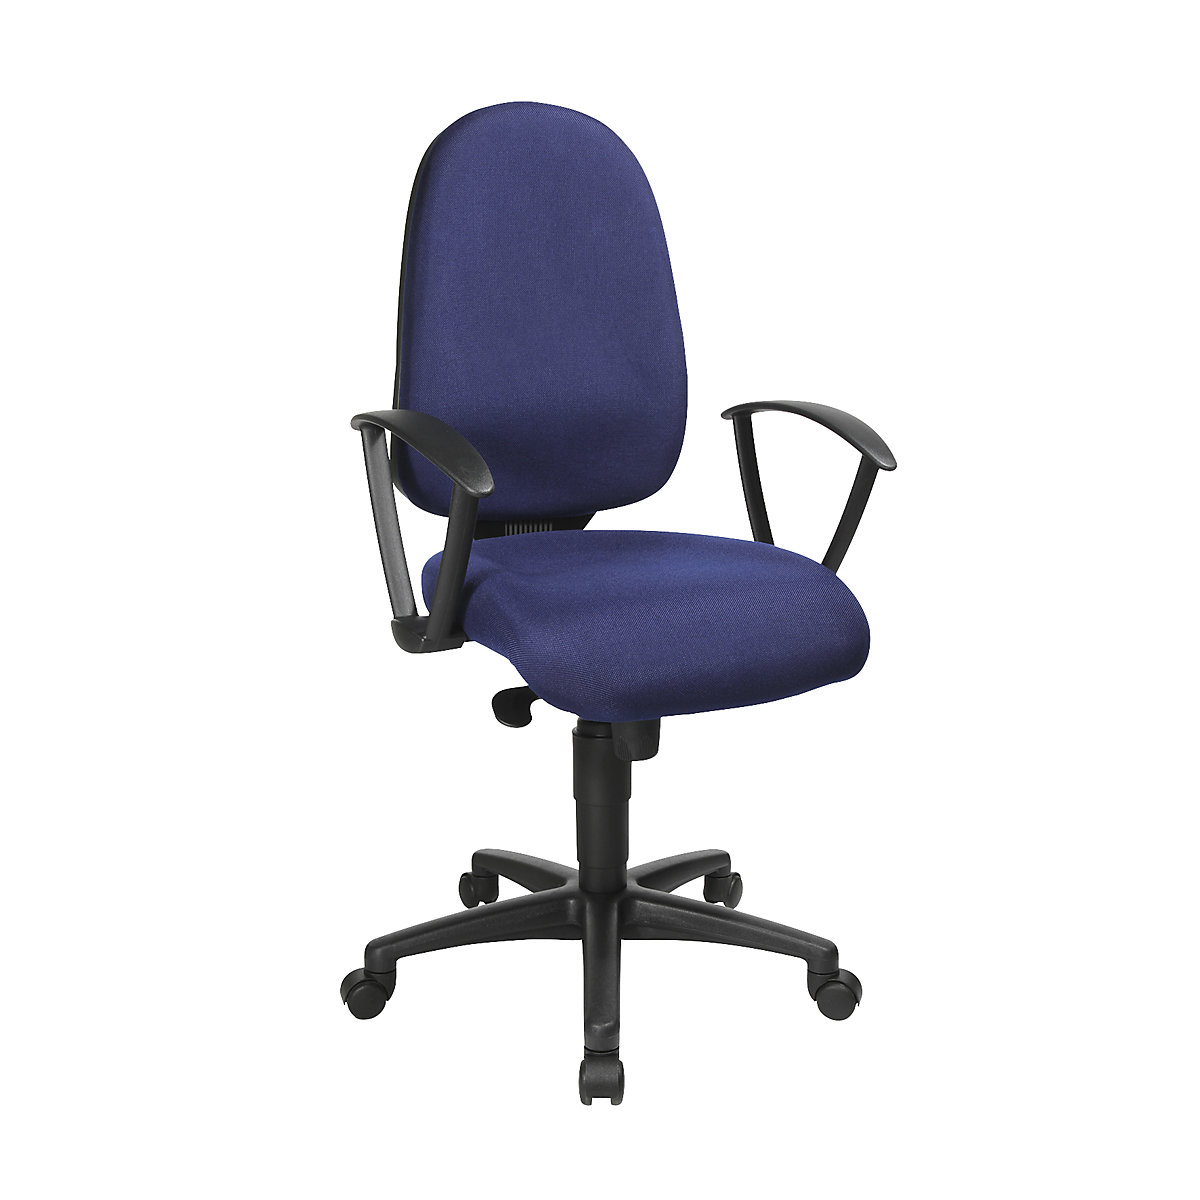 Okretna stolica s potporom za kralježnicu, sinkrona mehanika, sjedalo s potporom za kralježnicu – Topstar (Prikaz proizvoda 55)-54